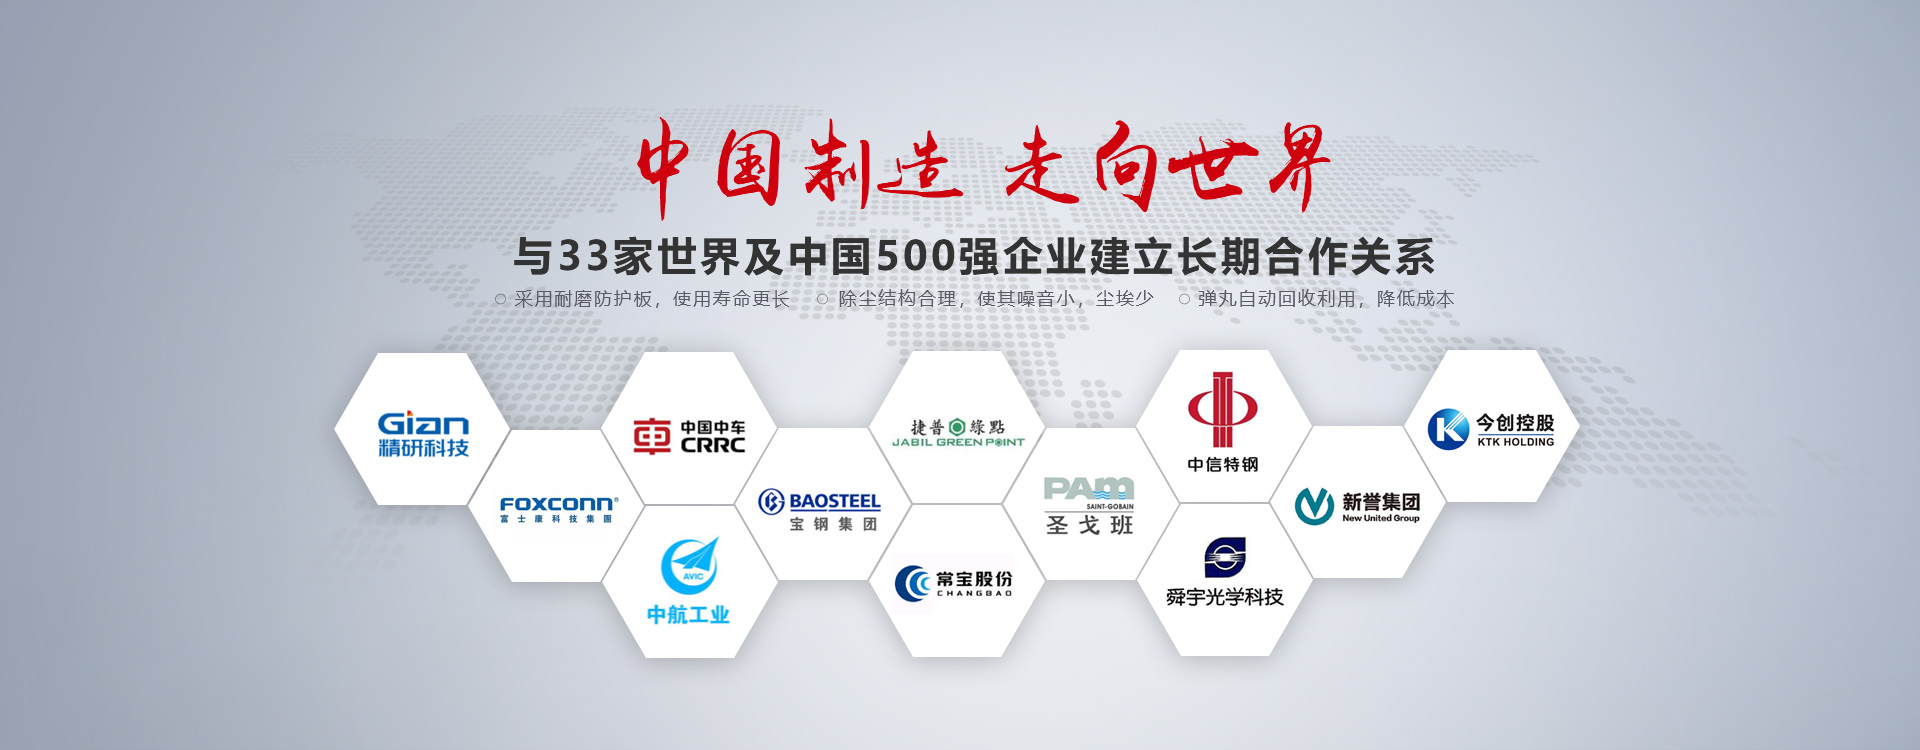 泰盛机械与33家世界及中国500强企业建立长期合作关系